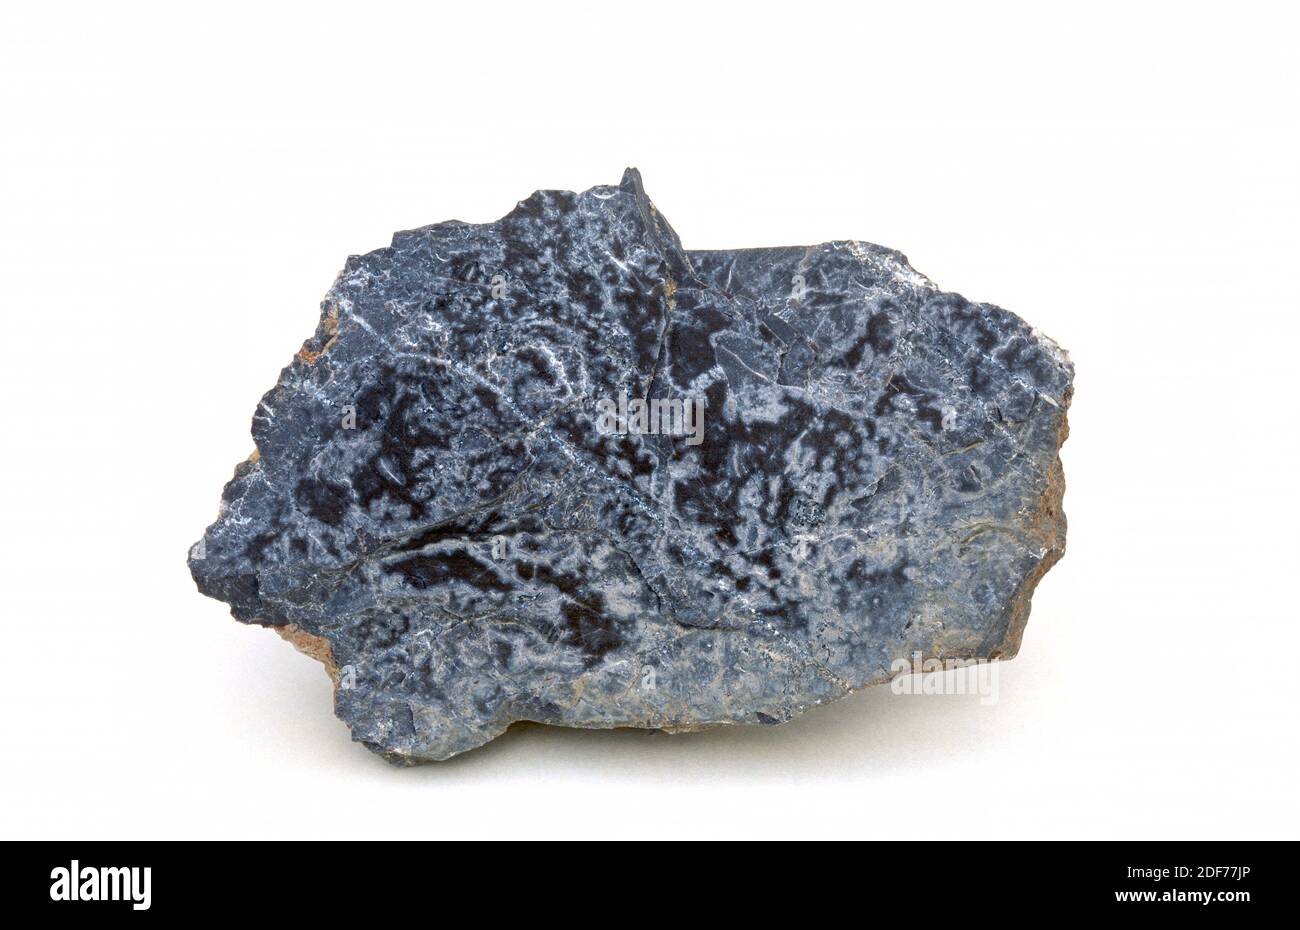 Kalkstein ist ein Sedimentgestein, das hauptsächlich aus Calciumcarbonat besteht. Probe. Stockfoto